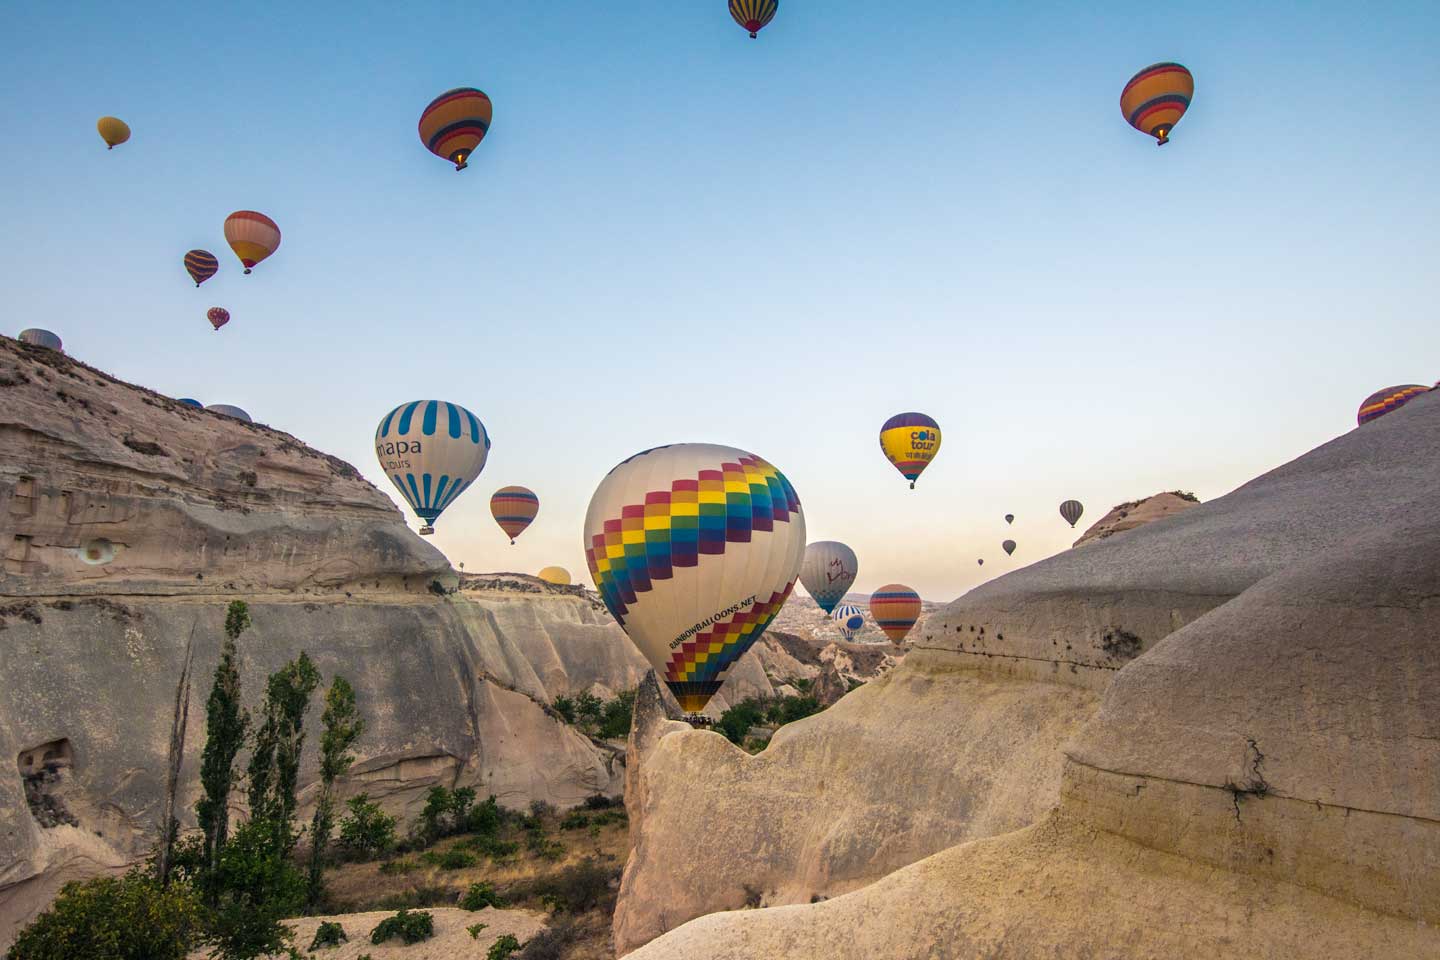 cappadocia balloon ride - colorful balloons